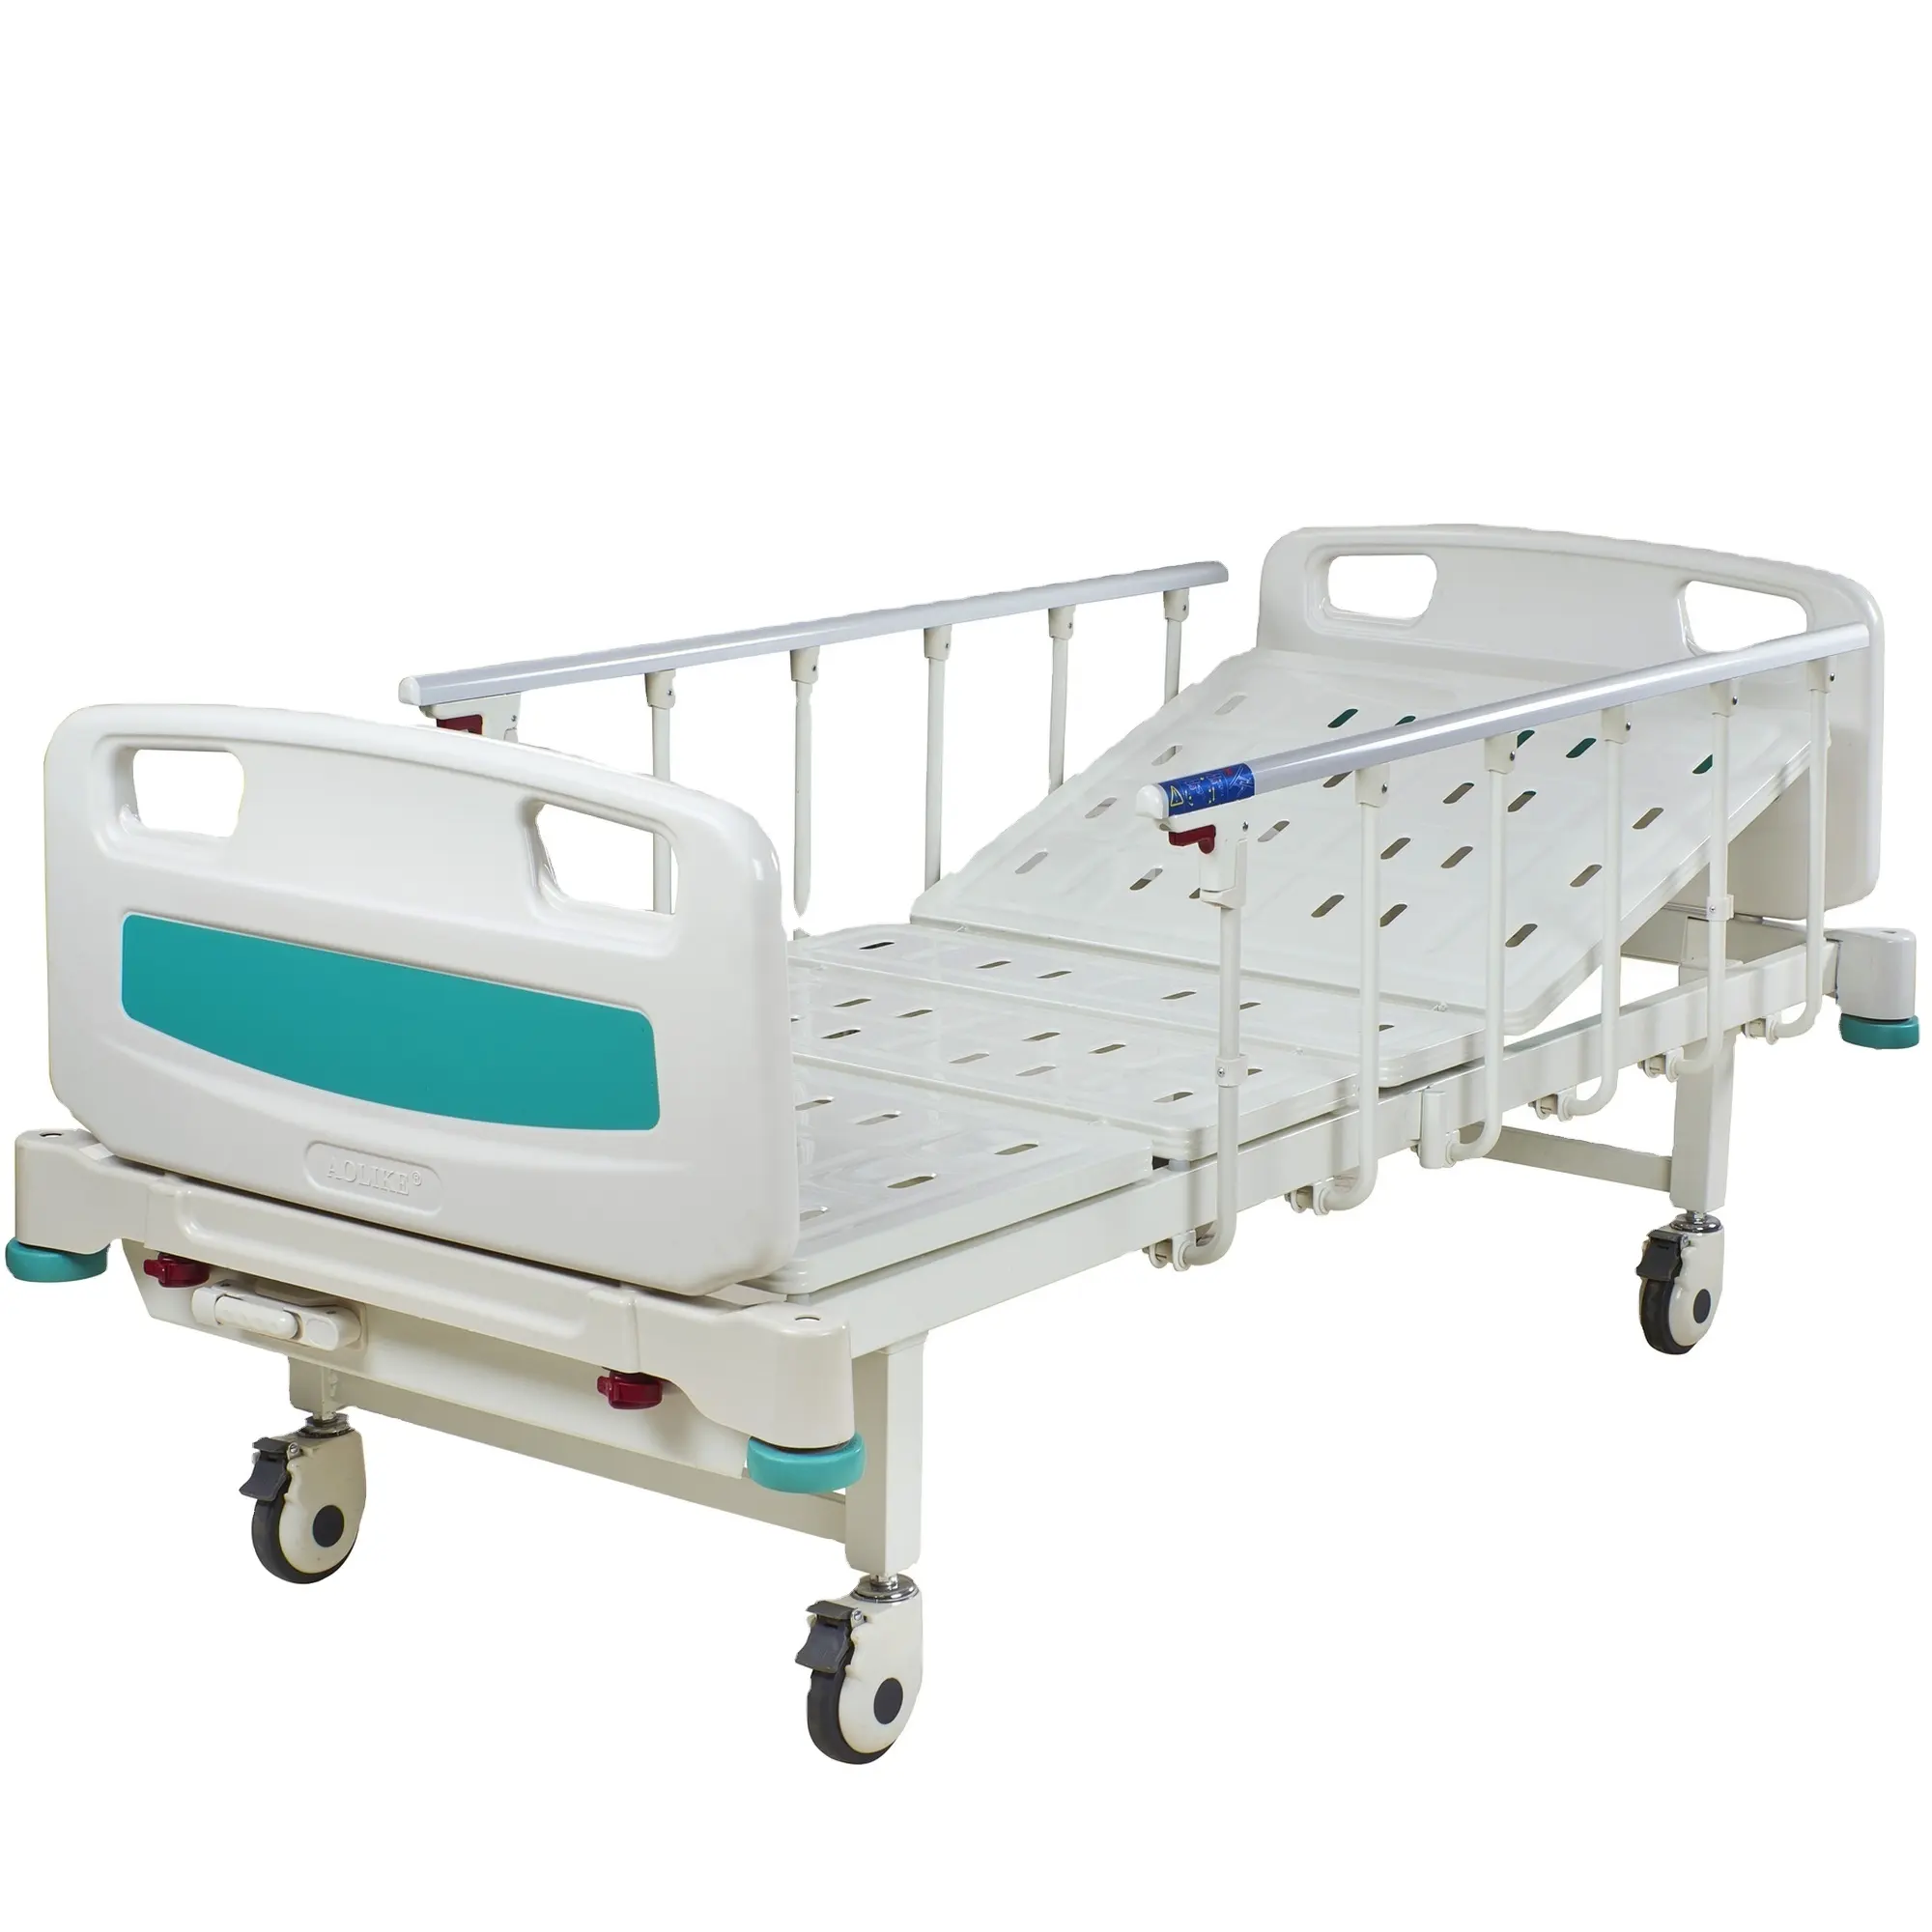 Bestseller buon prezzo produttori di mobili ospedalieri 1 funzioni un letto di cura manuale a manovella per l'ospedale